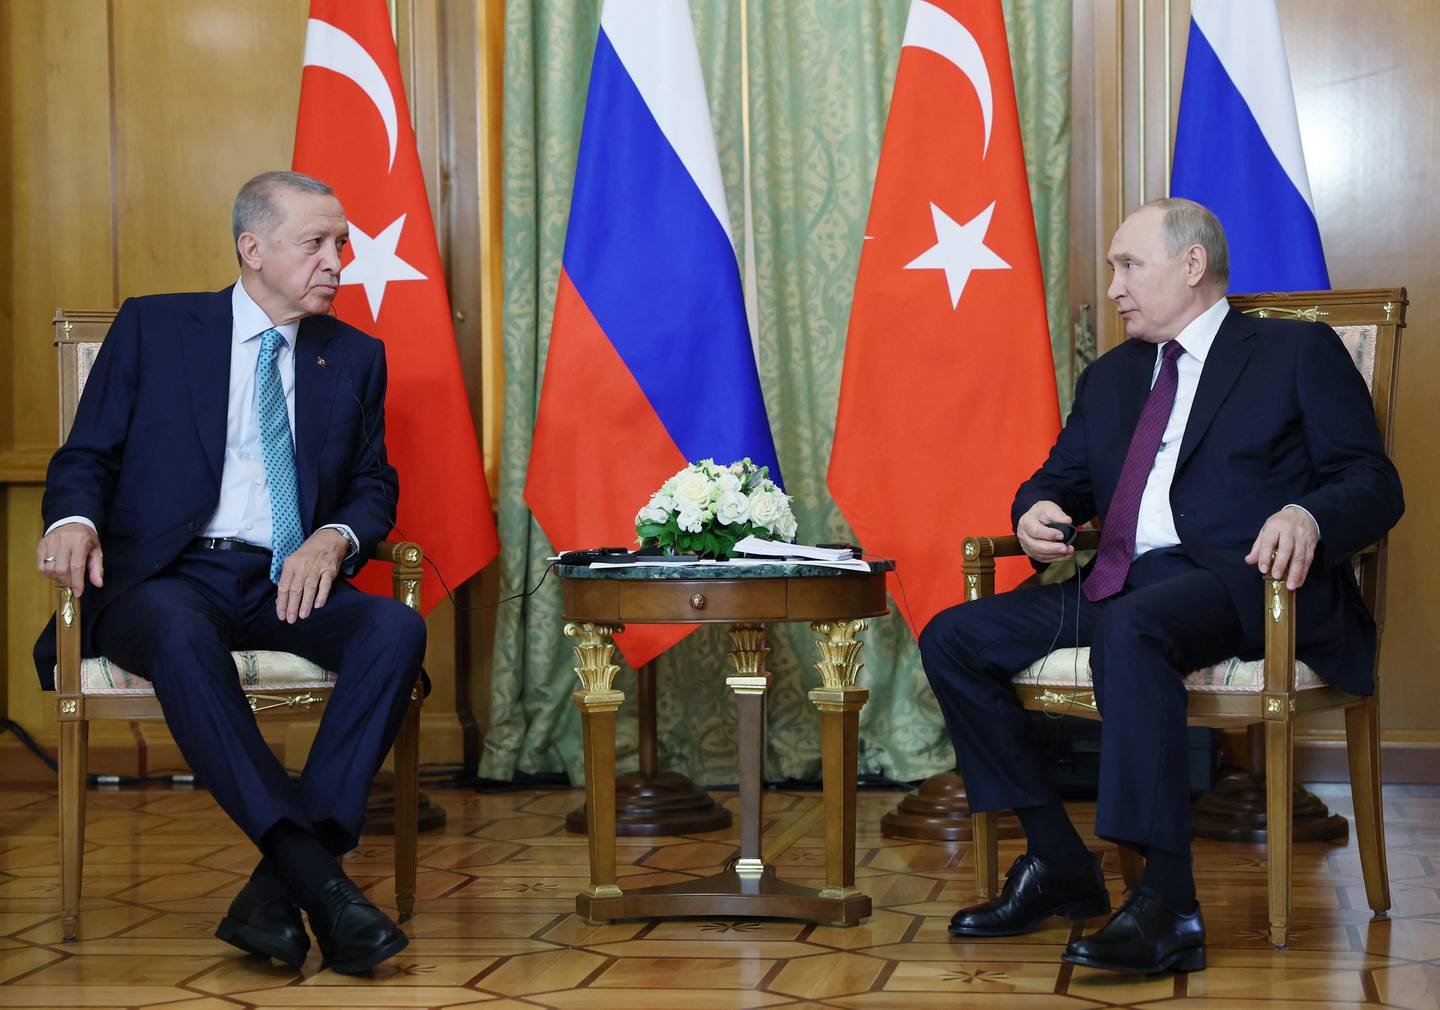 El presidente ruso Vladimir Putin (derecha) y el presidente turco Recep Tayyip Erdogan asisten a una reunión en Sochi.